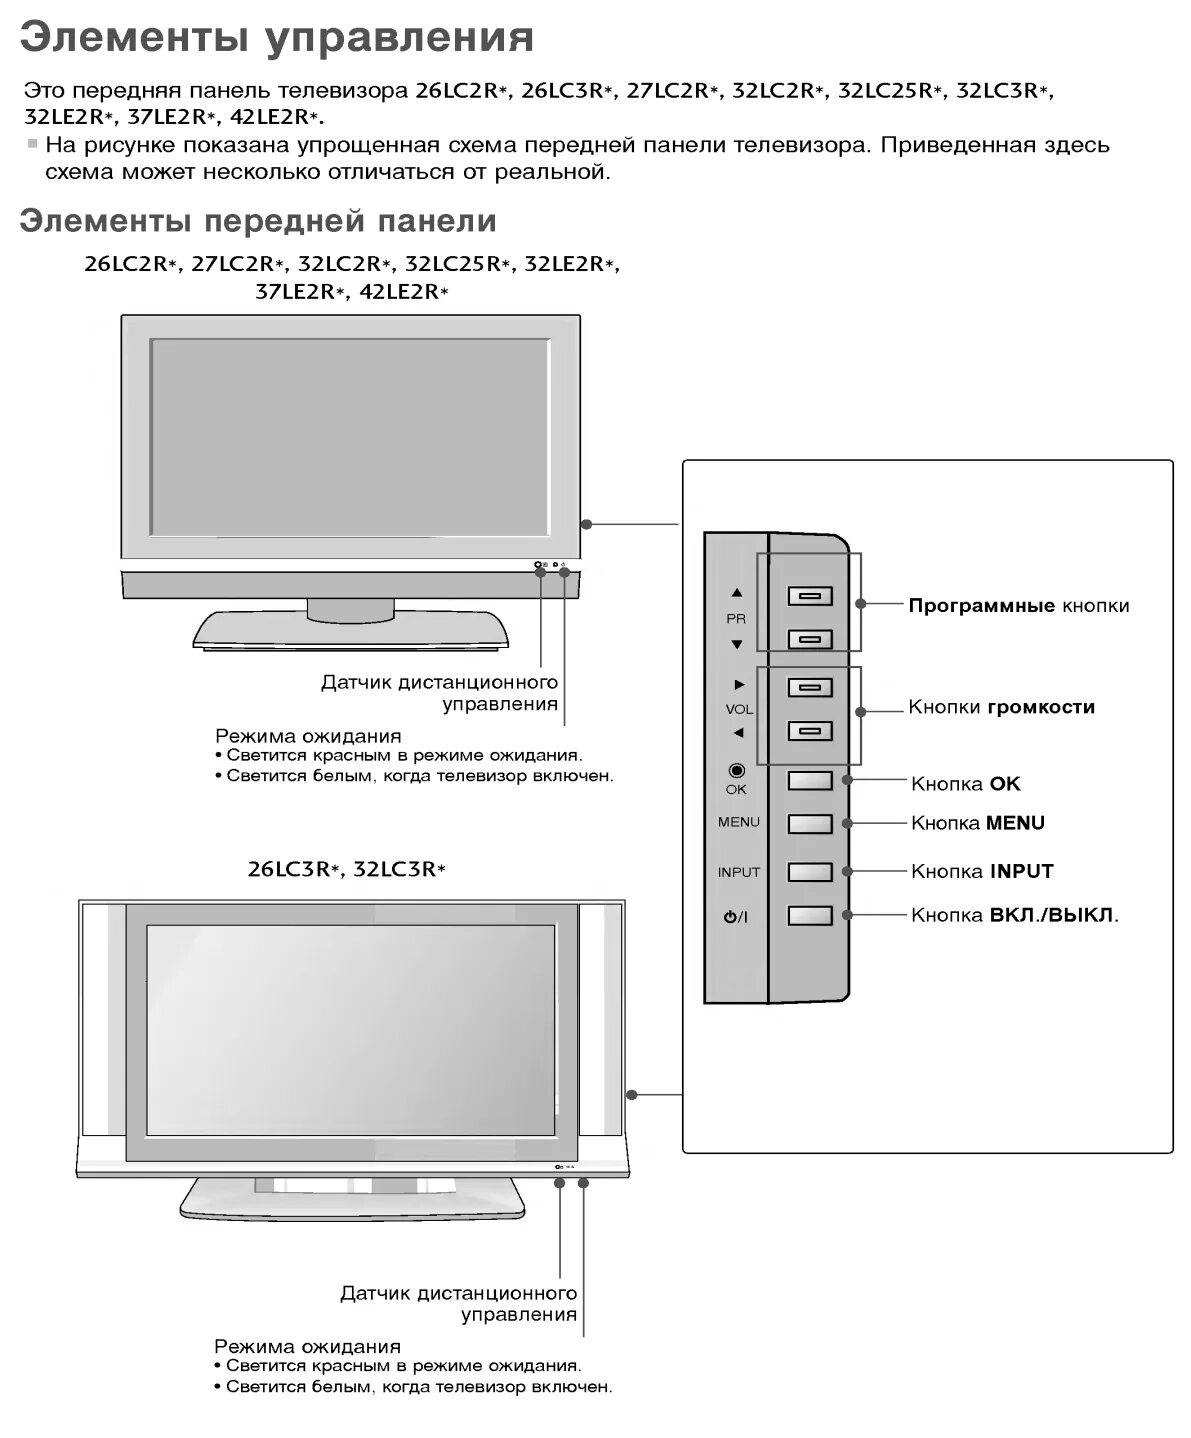 Телевизоры характеристики описание. LG 32lc2r схема. Техническое описание и телевизора. Технические характеристики телевизора. Потребительские свойства телевизоров.